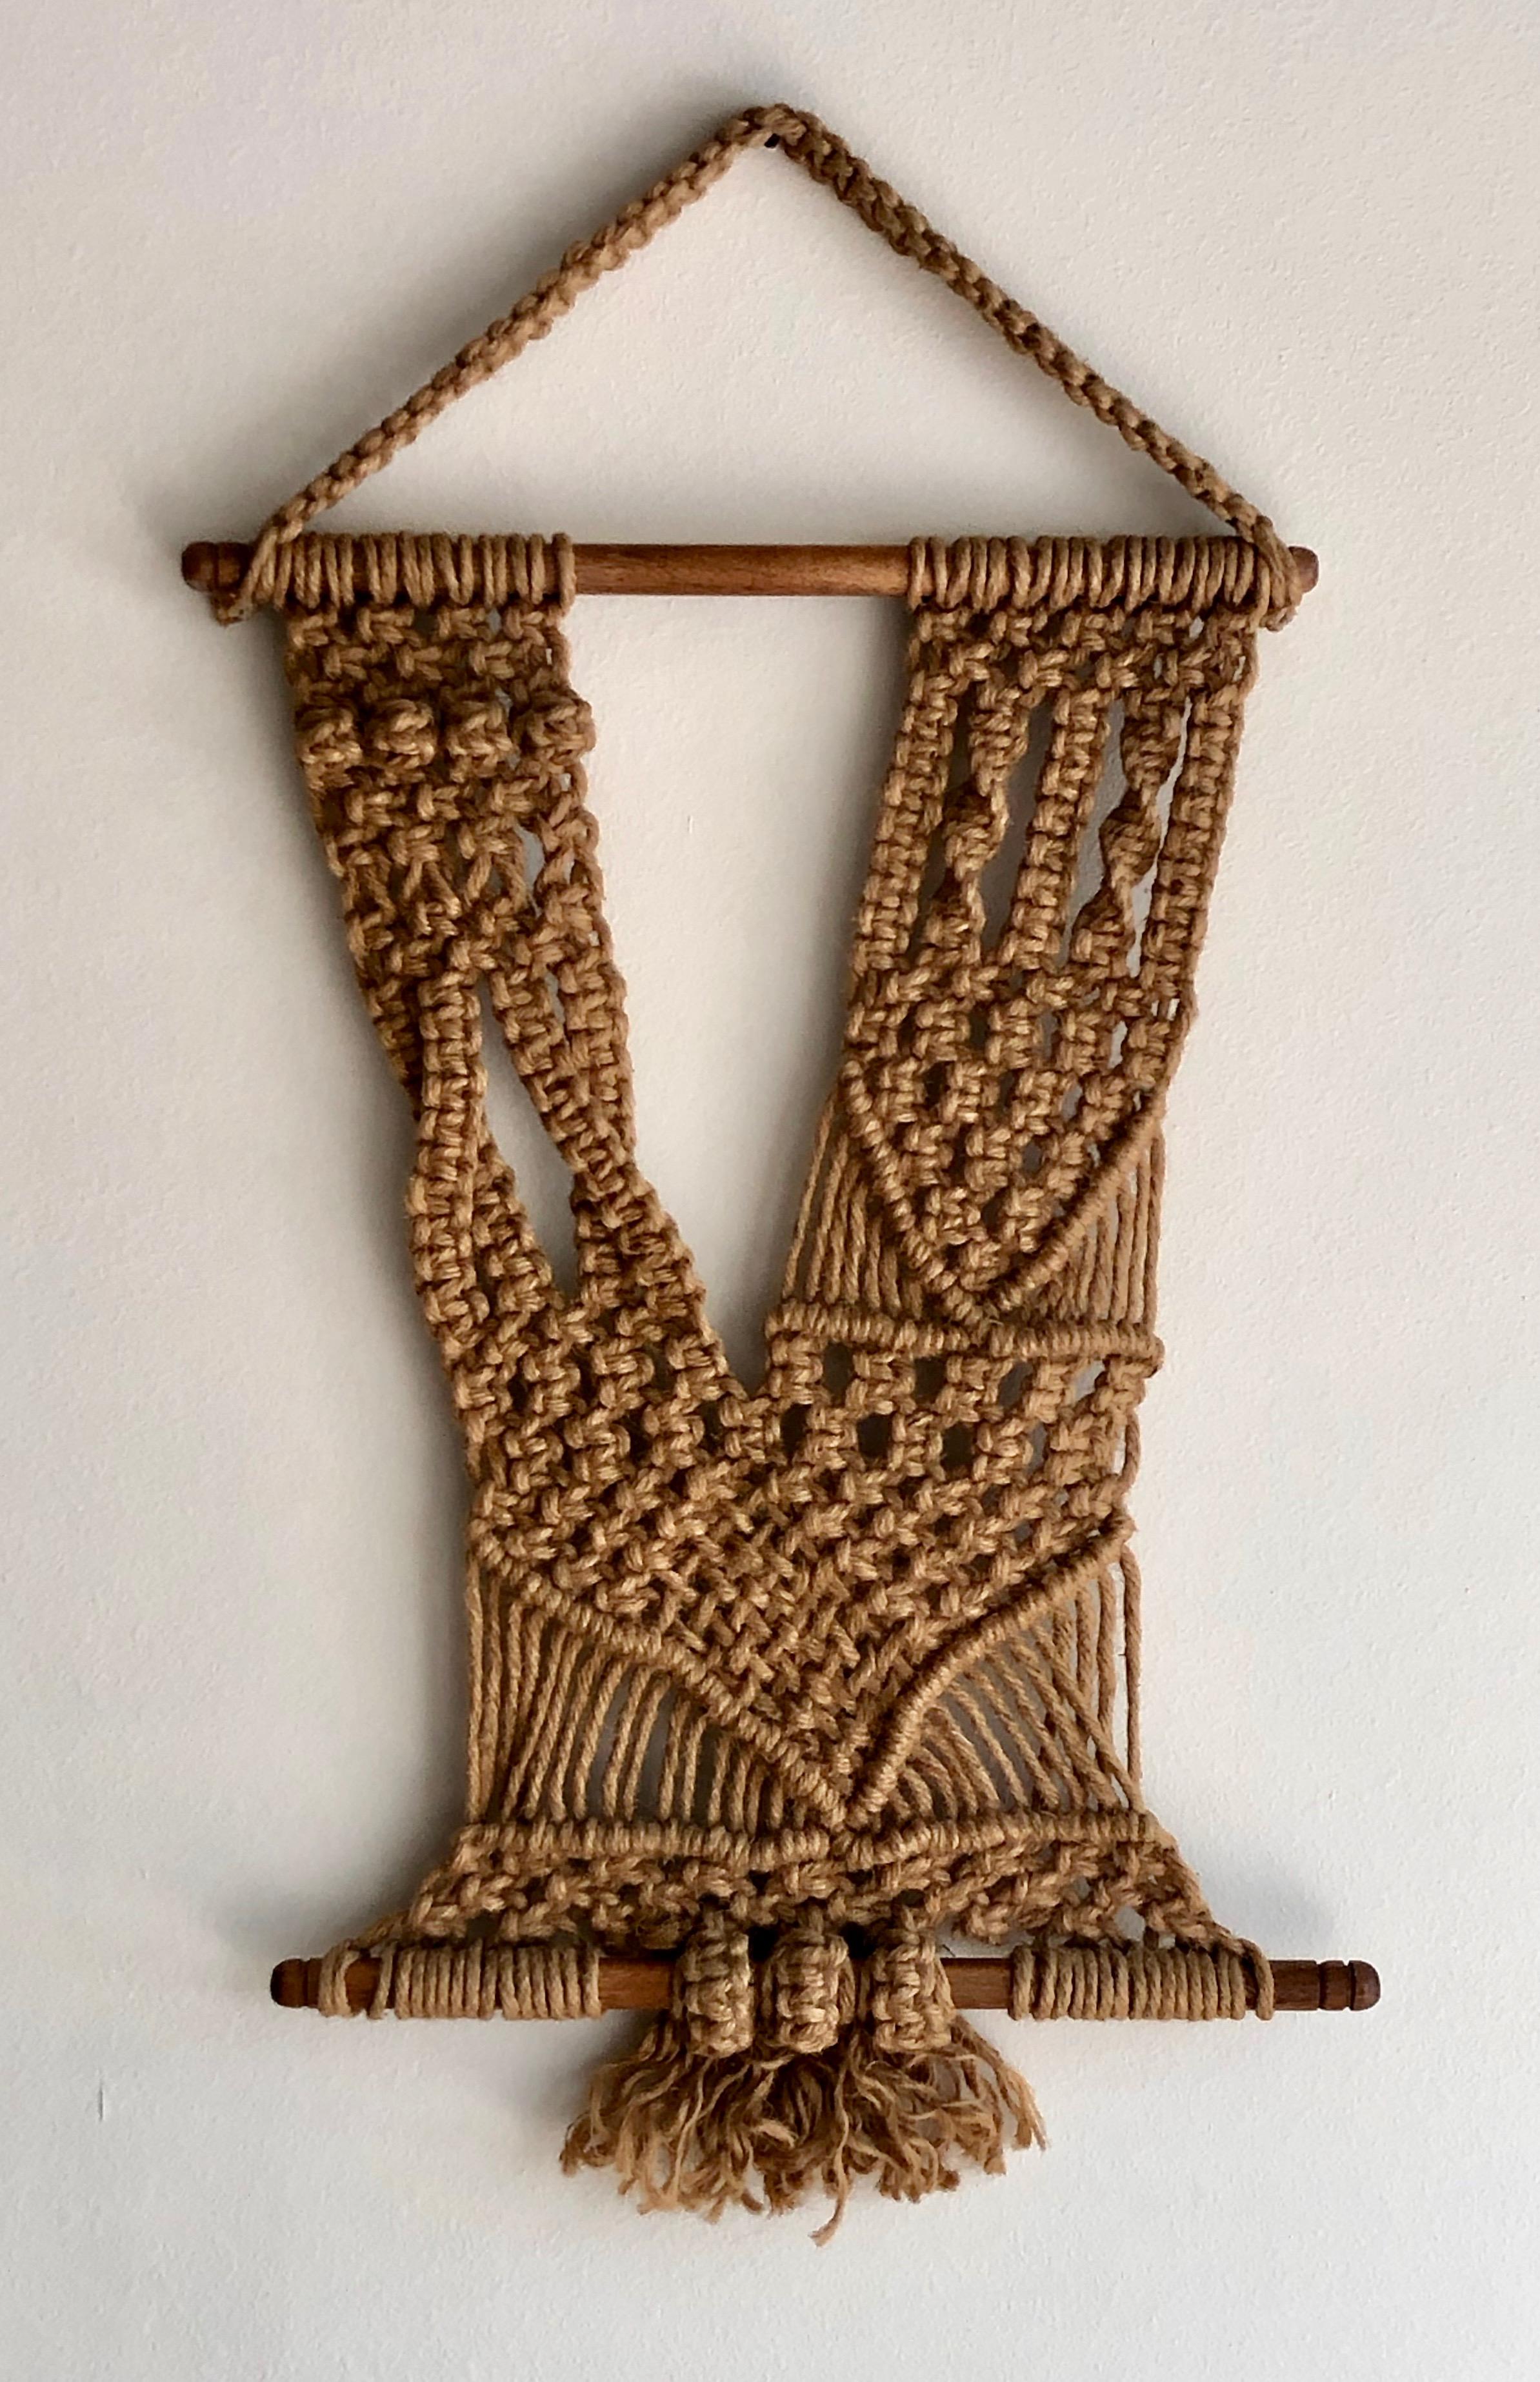 Unique midcentury handmade hanging fiber art.